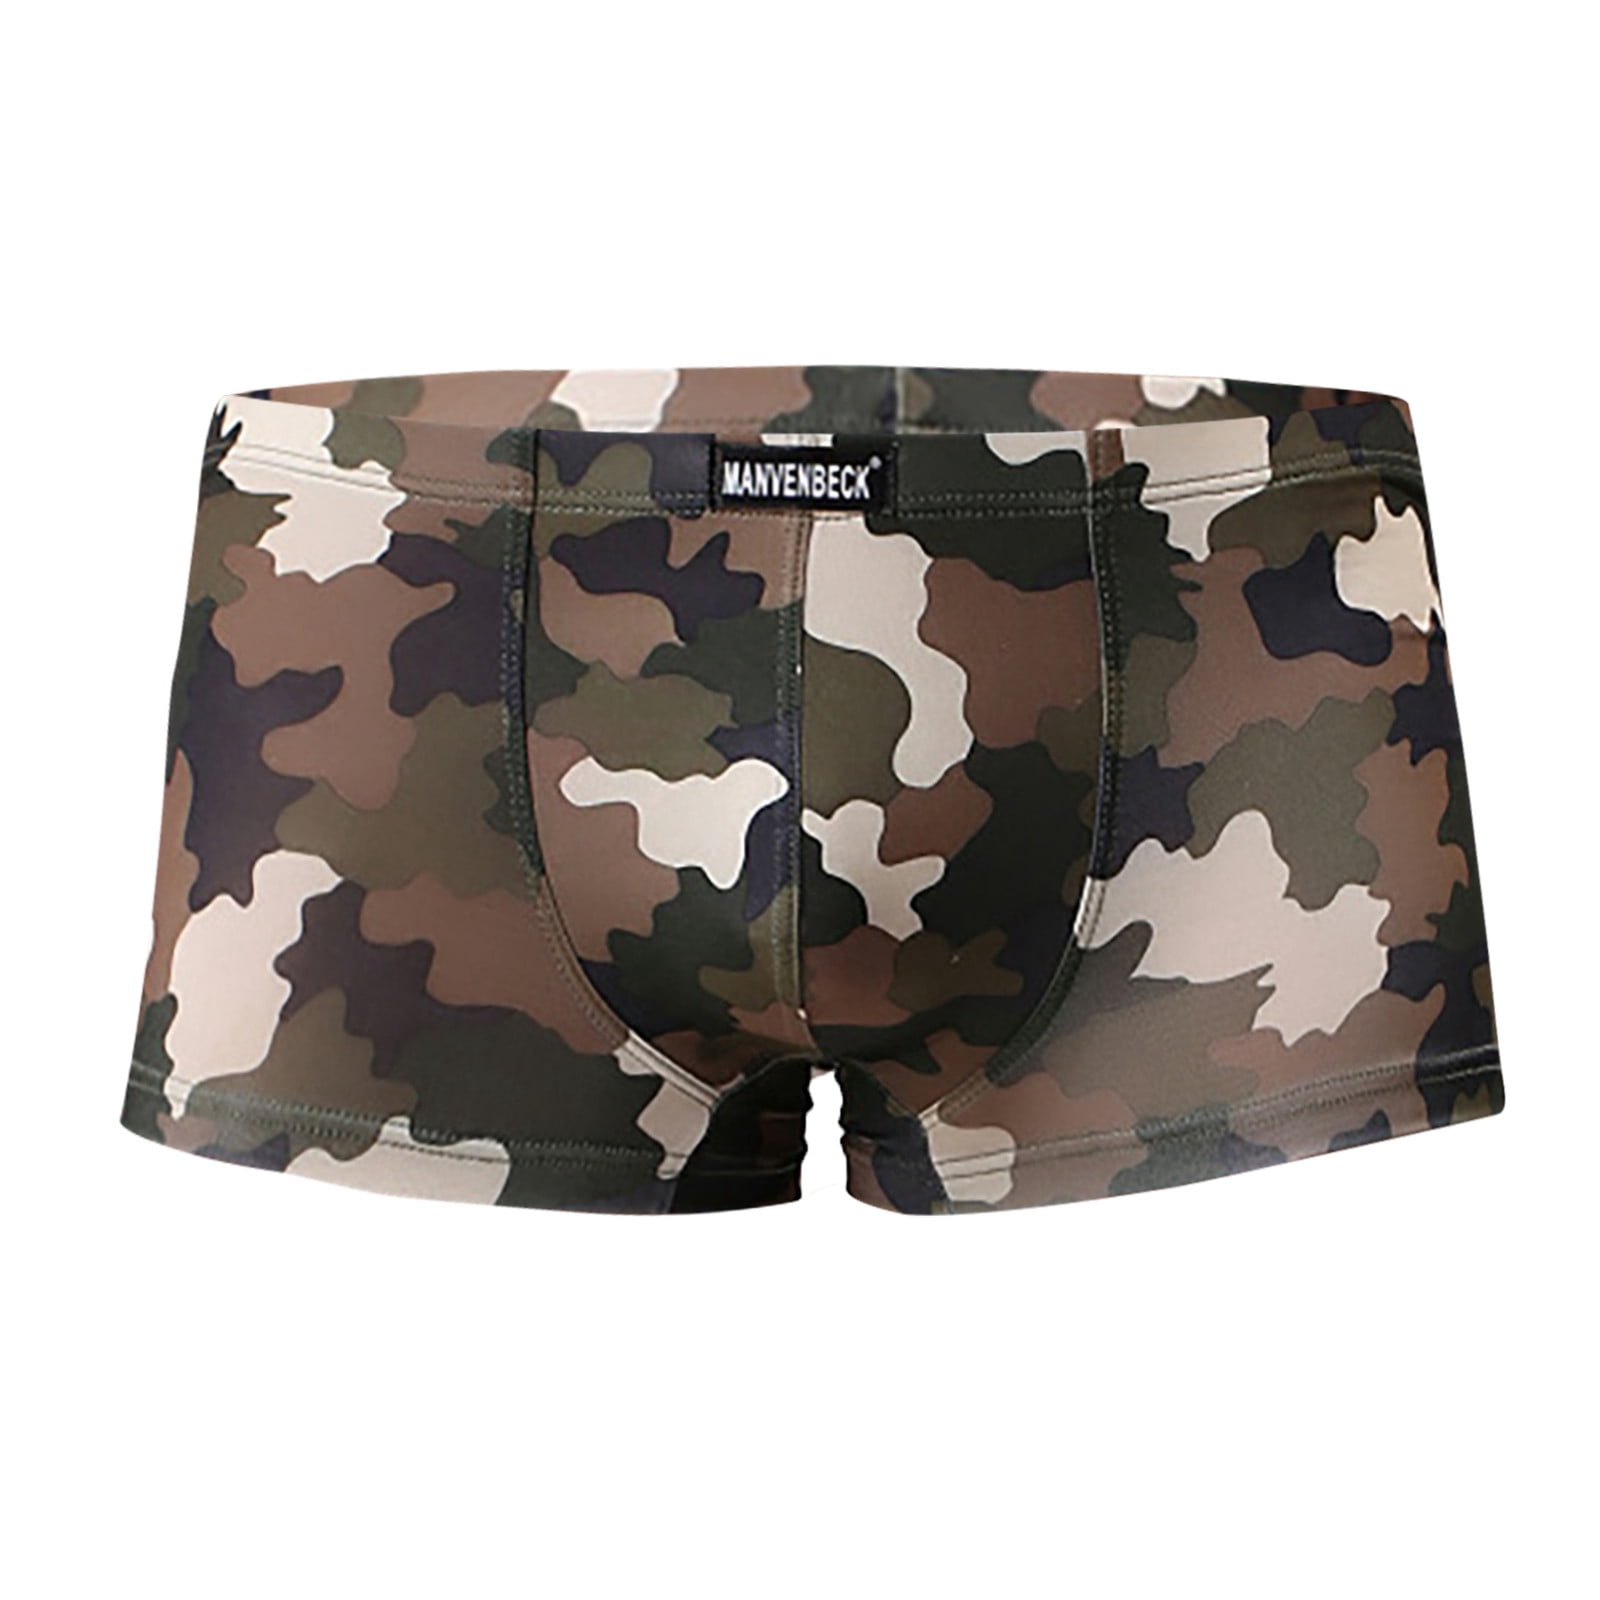 Underwear military men's camouflage boxer briefs trunks underwear